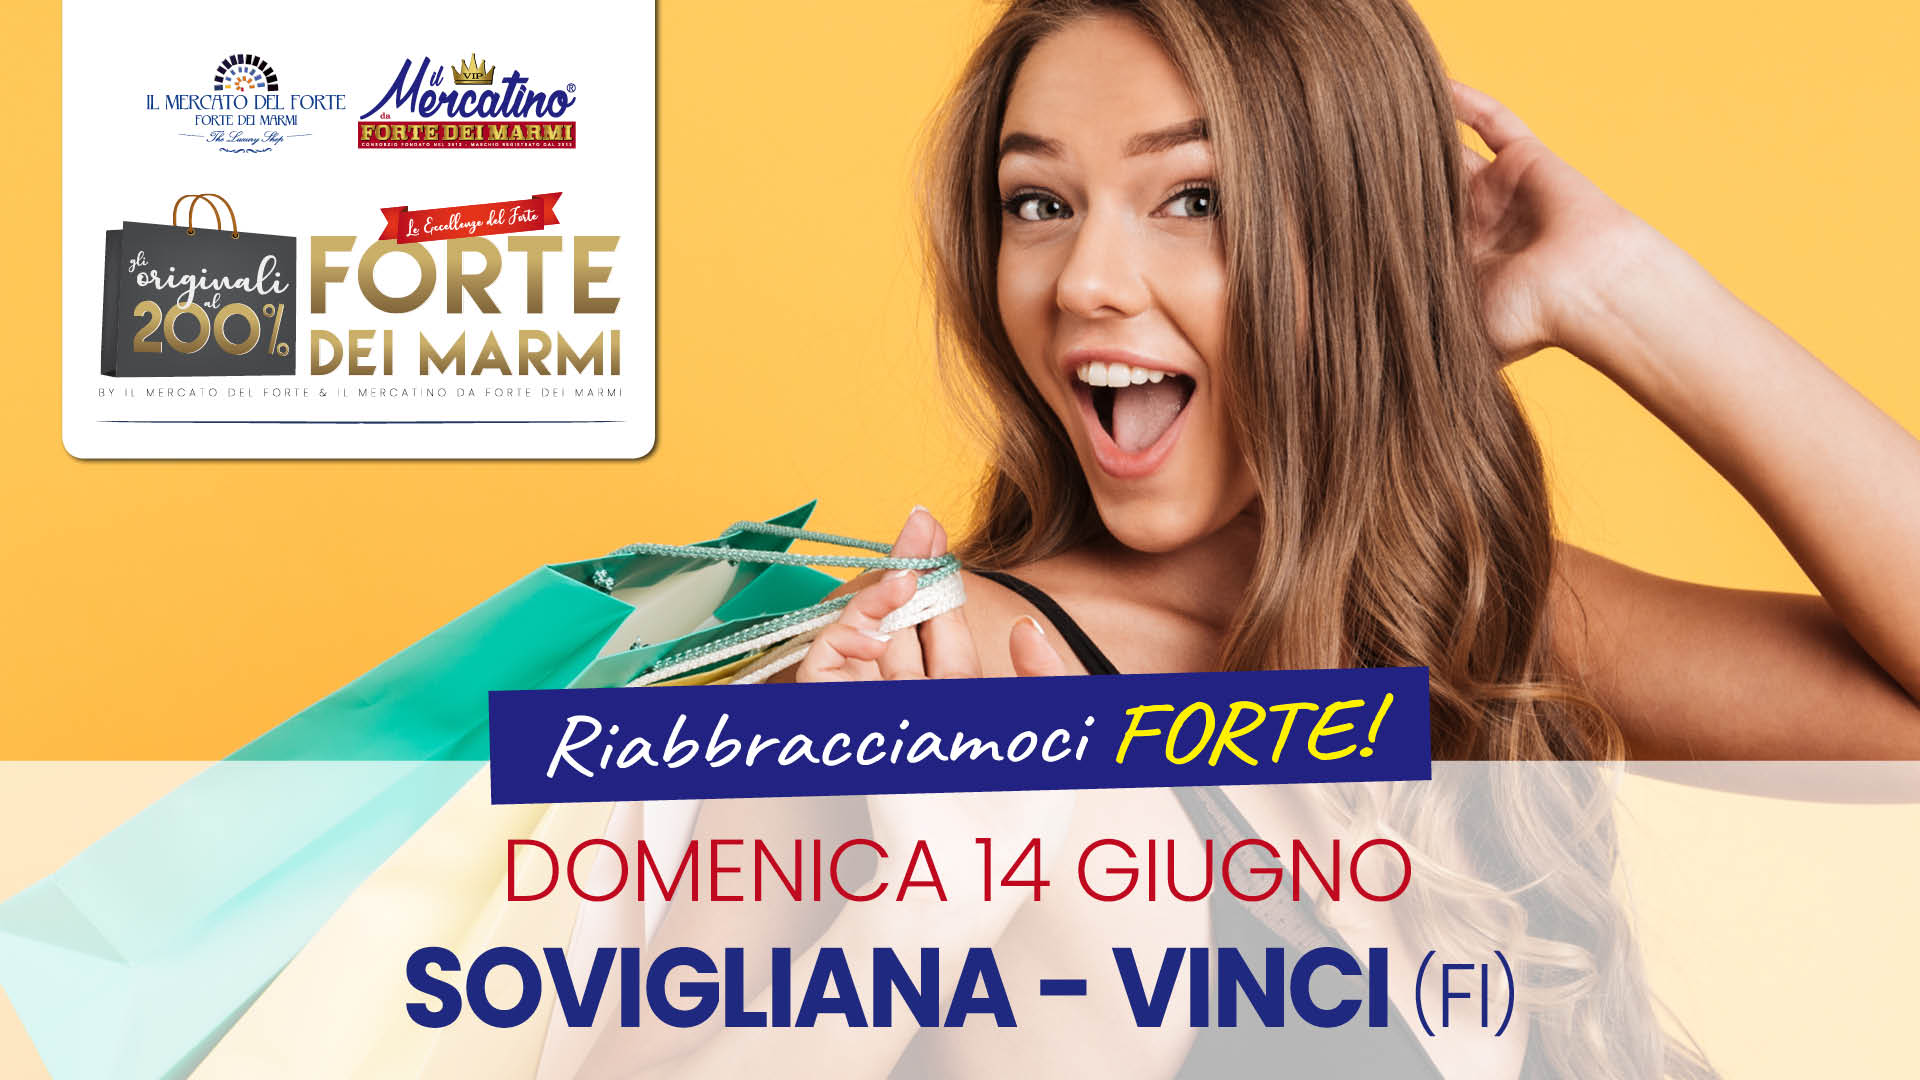 Sovigliana-Vinci(FI)